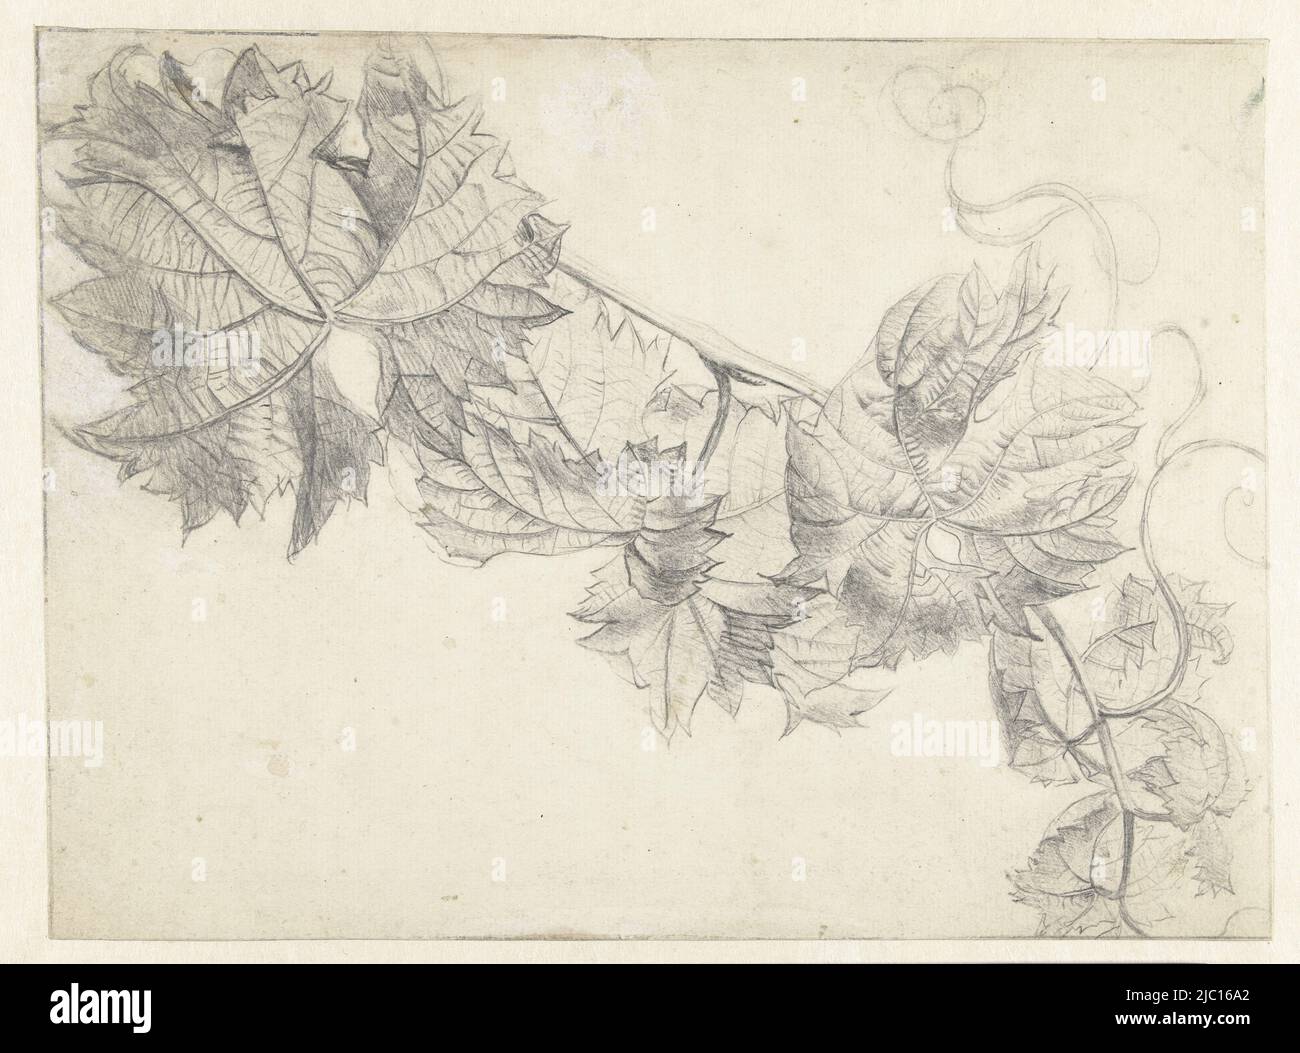 Branche avec vigne, dessinateur: Paul Theodor van Brussel, 1764 - 1791, papier, h 306 mm × l 227 mm Banque D'Images